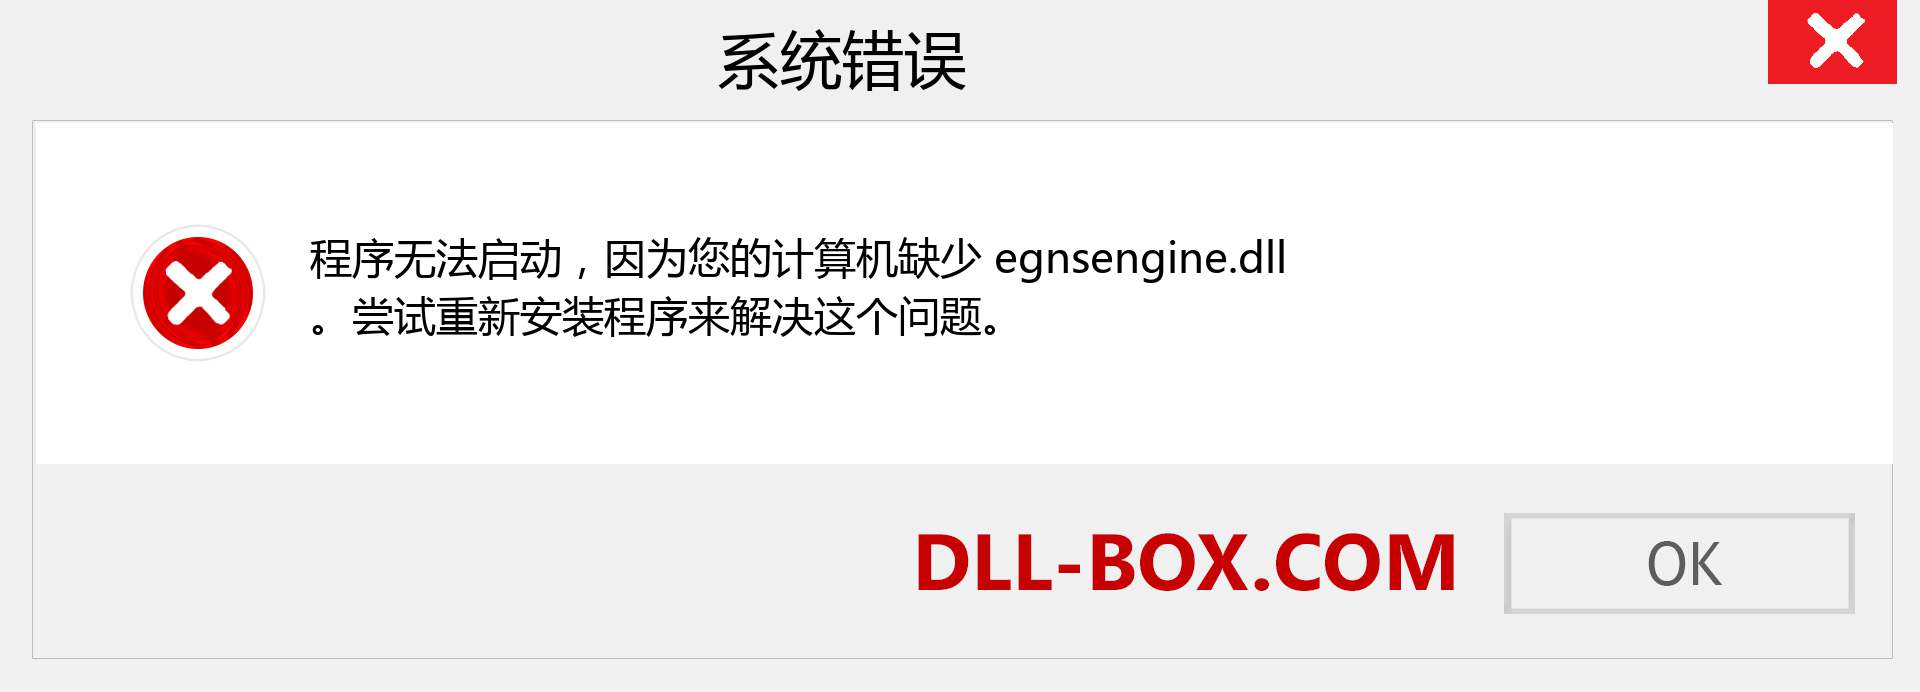 egnsengine.dll 文件丢失？。 适用于 Windows 7、8、10 的下载 - 修复 Windows、照片、图像上的 egnsengine dll 丢失错误